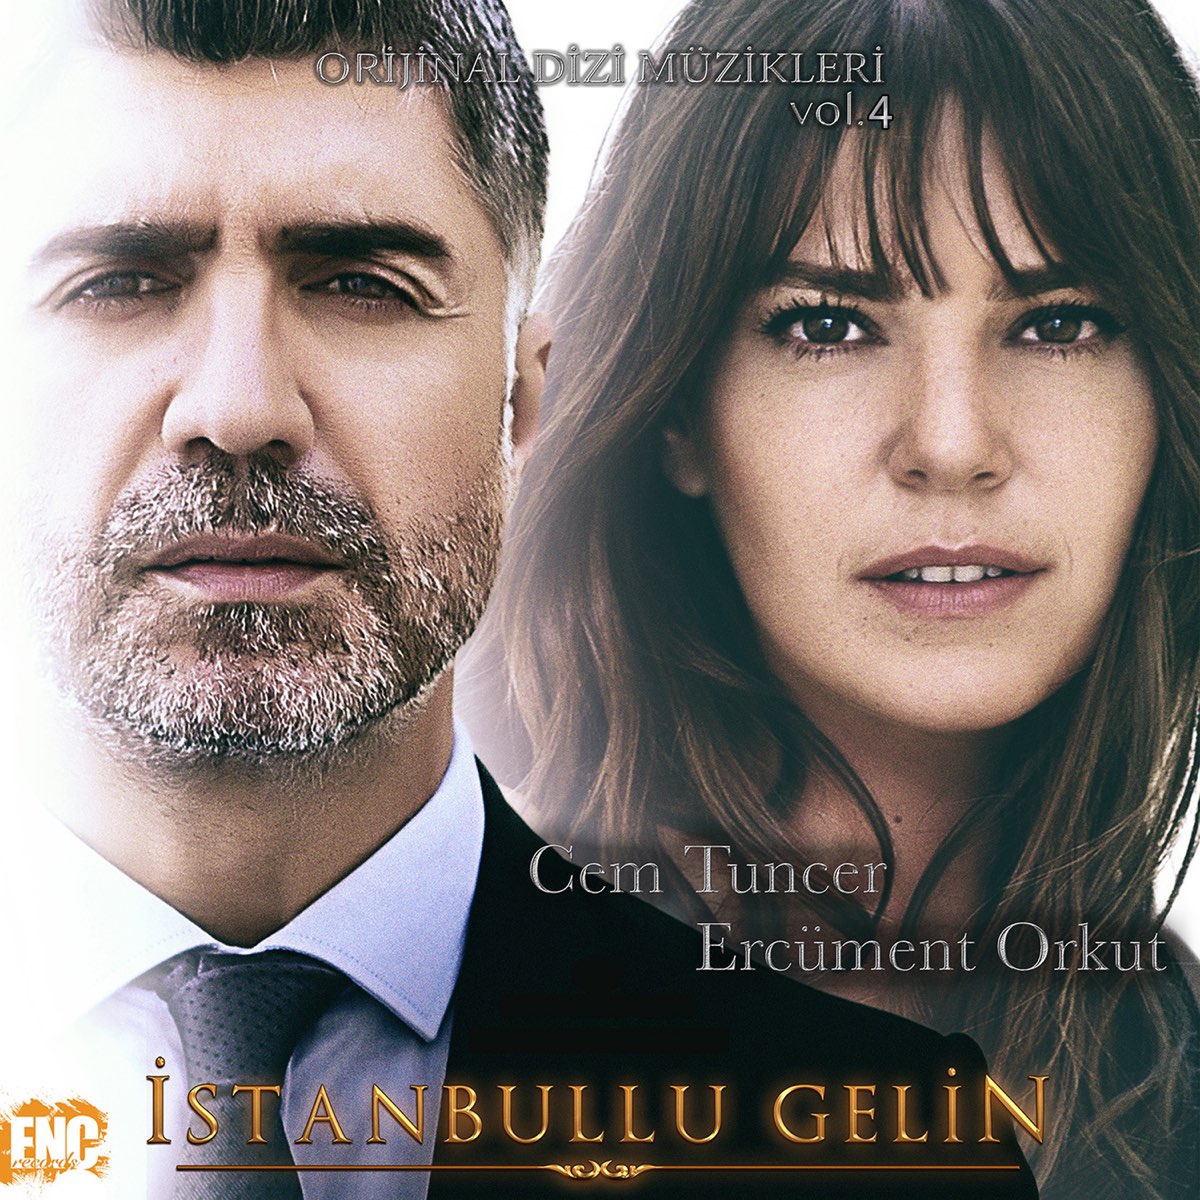 İstanbullu Gelin (Orijinal Dizi Müzikleri Vol. 4) - Album by Cem Tuncer &  Ercüment Orkut - Apple Music